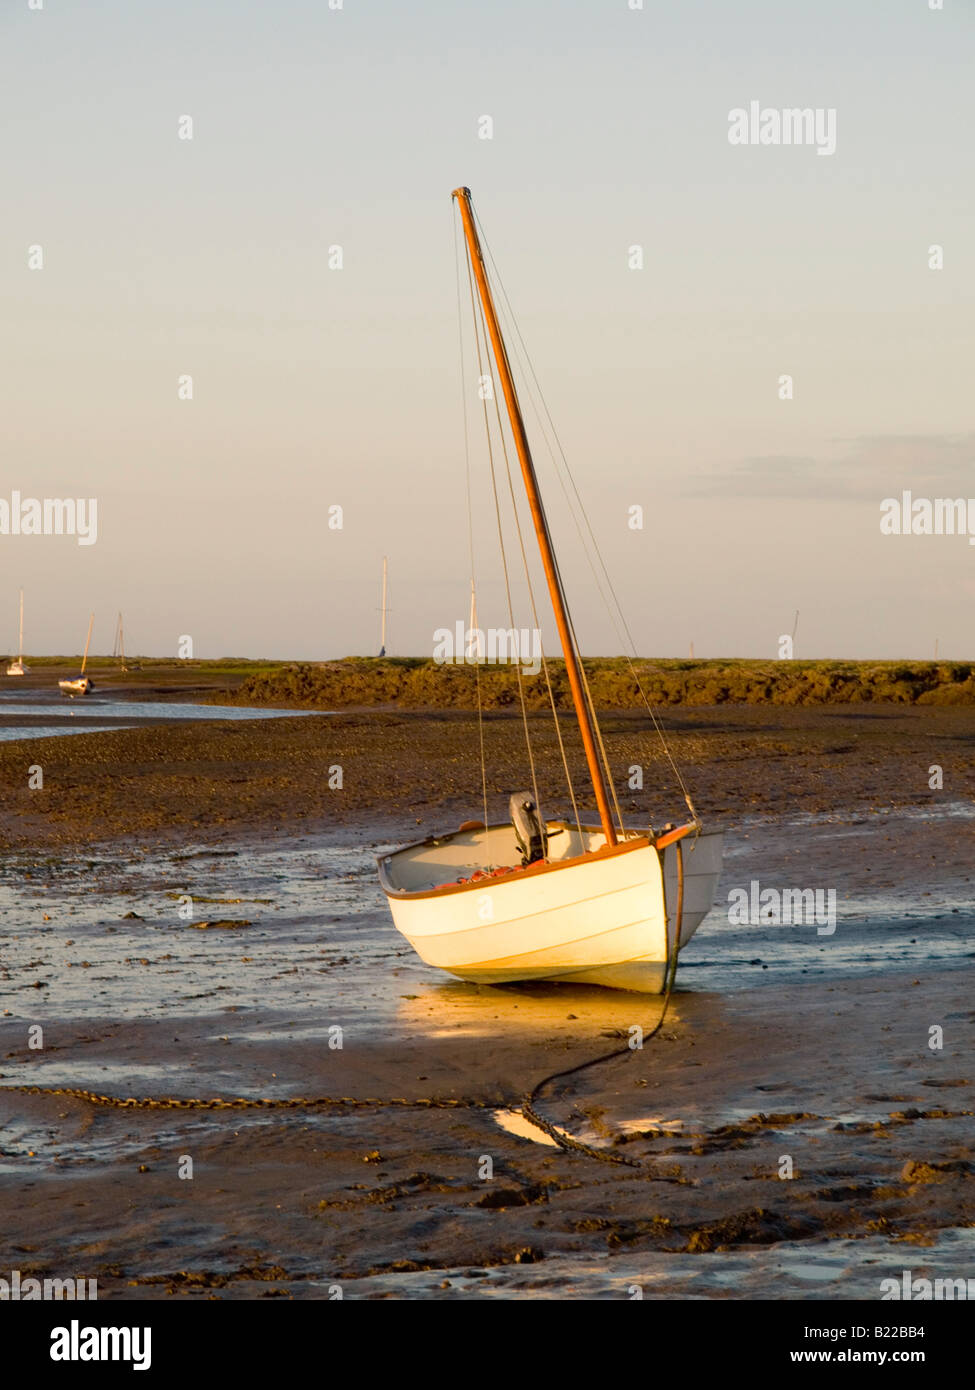 Un seul bateau sur la vase à marée basse. Coucher du soleil dans le village de Burnham Deepdale sur la côte nord du comté de Norfolk dans l'East Anglia UK Banque D'Images